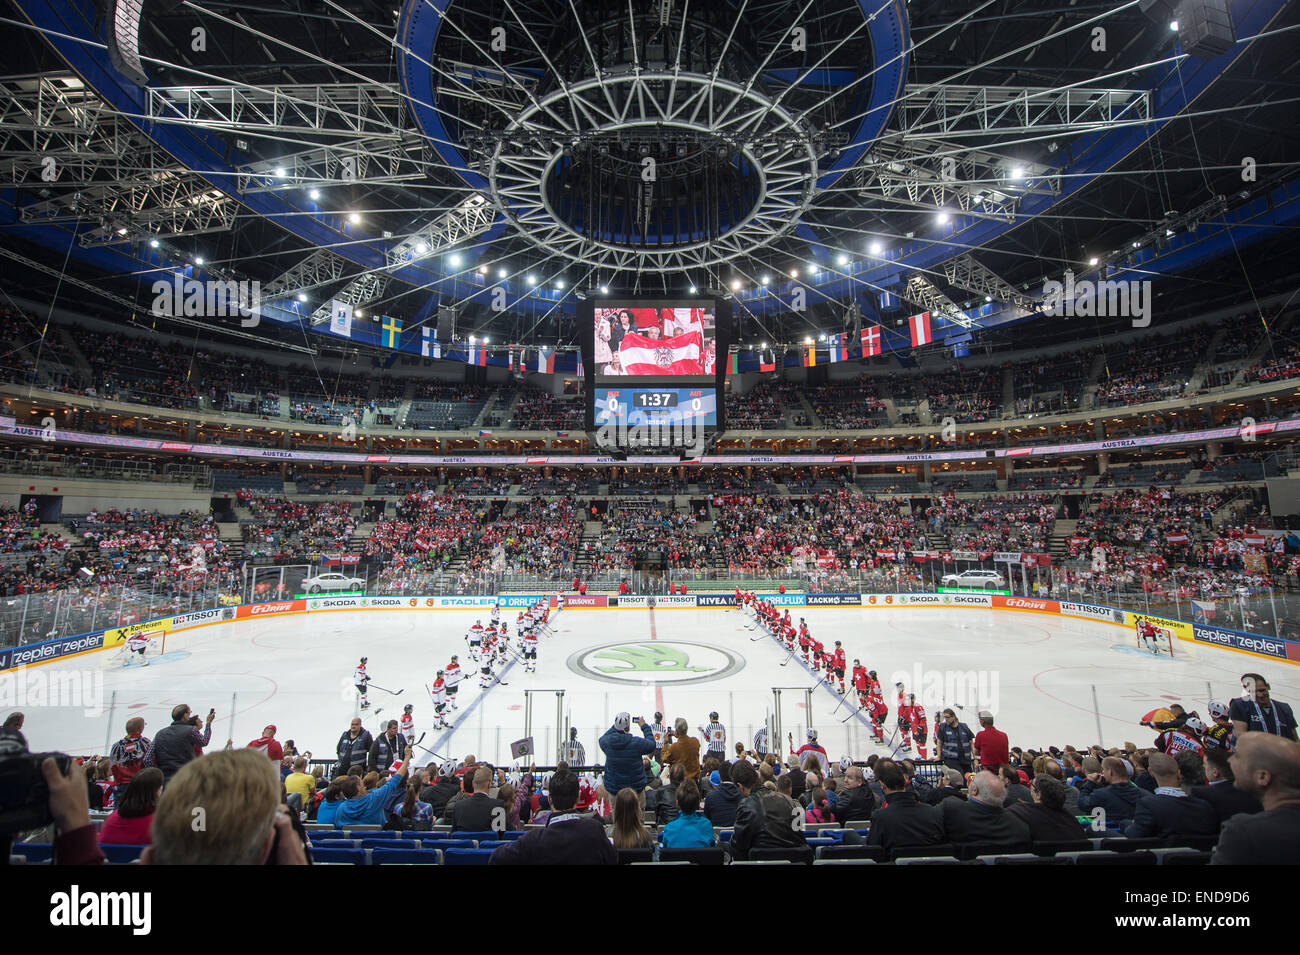 Prag, Tschechische Republik. 2. Mai 2015. Blick auf überfüllten O2 Arena Eishockey-Stadion vor der Ice Hockey World Championship match Schweiz Vs Österreich in Prag, Tschechische Republik, 2